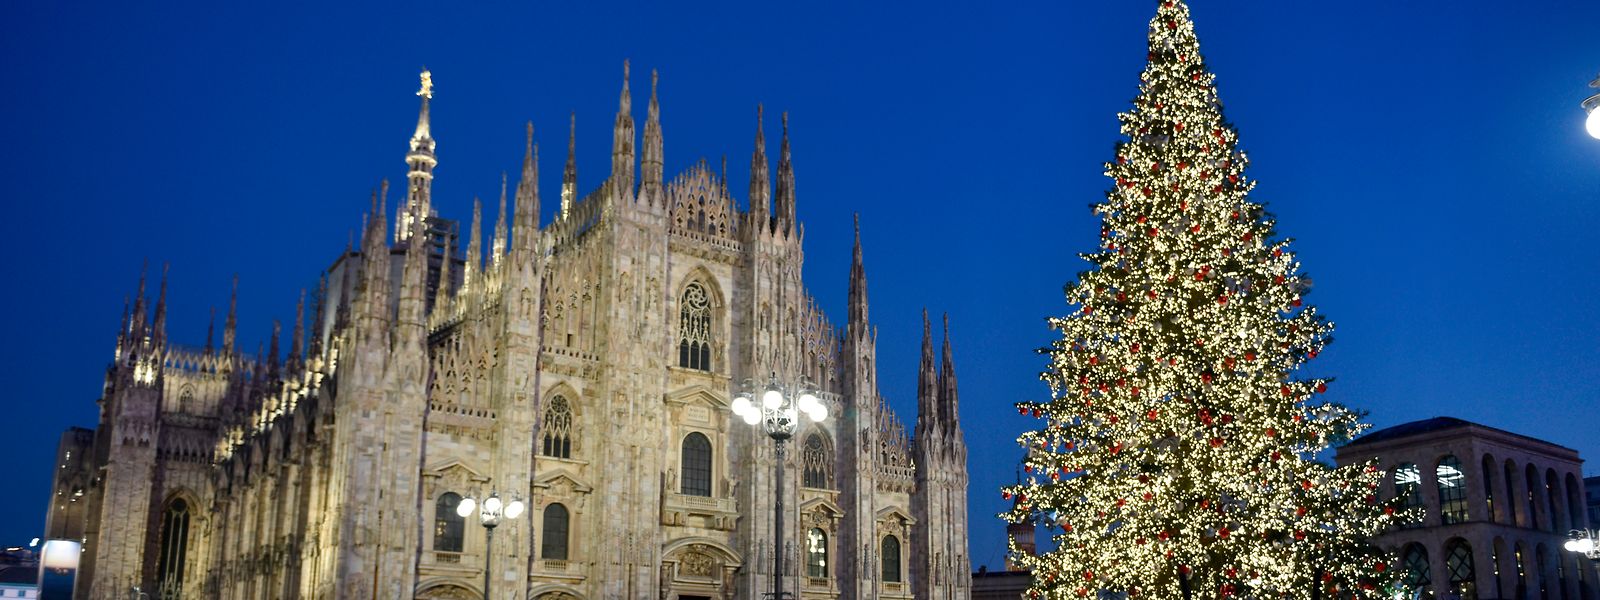 Blick auf die Piazza del Duomo mit dem Weihnachtsbaum und im Hintergrund dem Mailänder Dom. Hier soll es in der Silvesternacht massenhaft zu sexuellen Übergriffen gekommen sein.